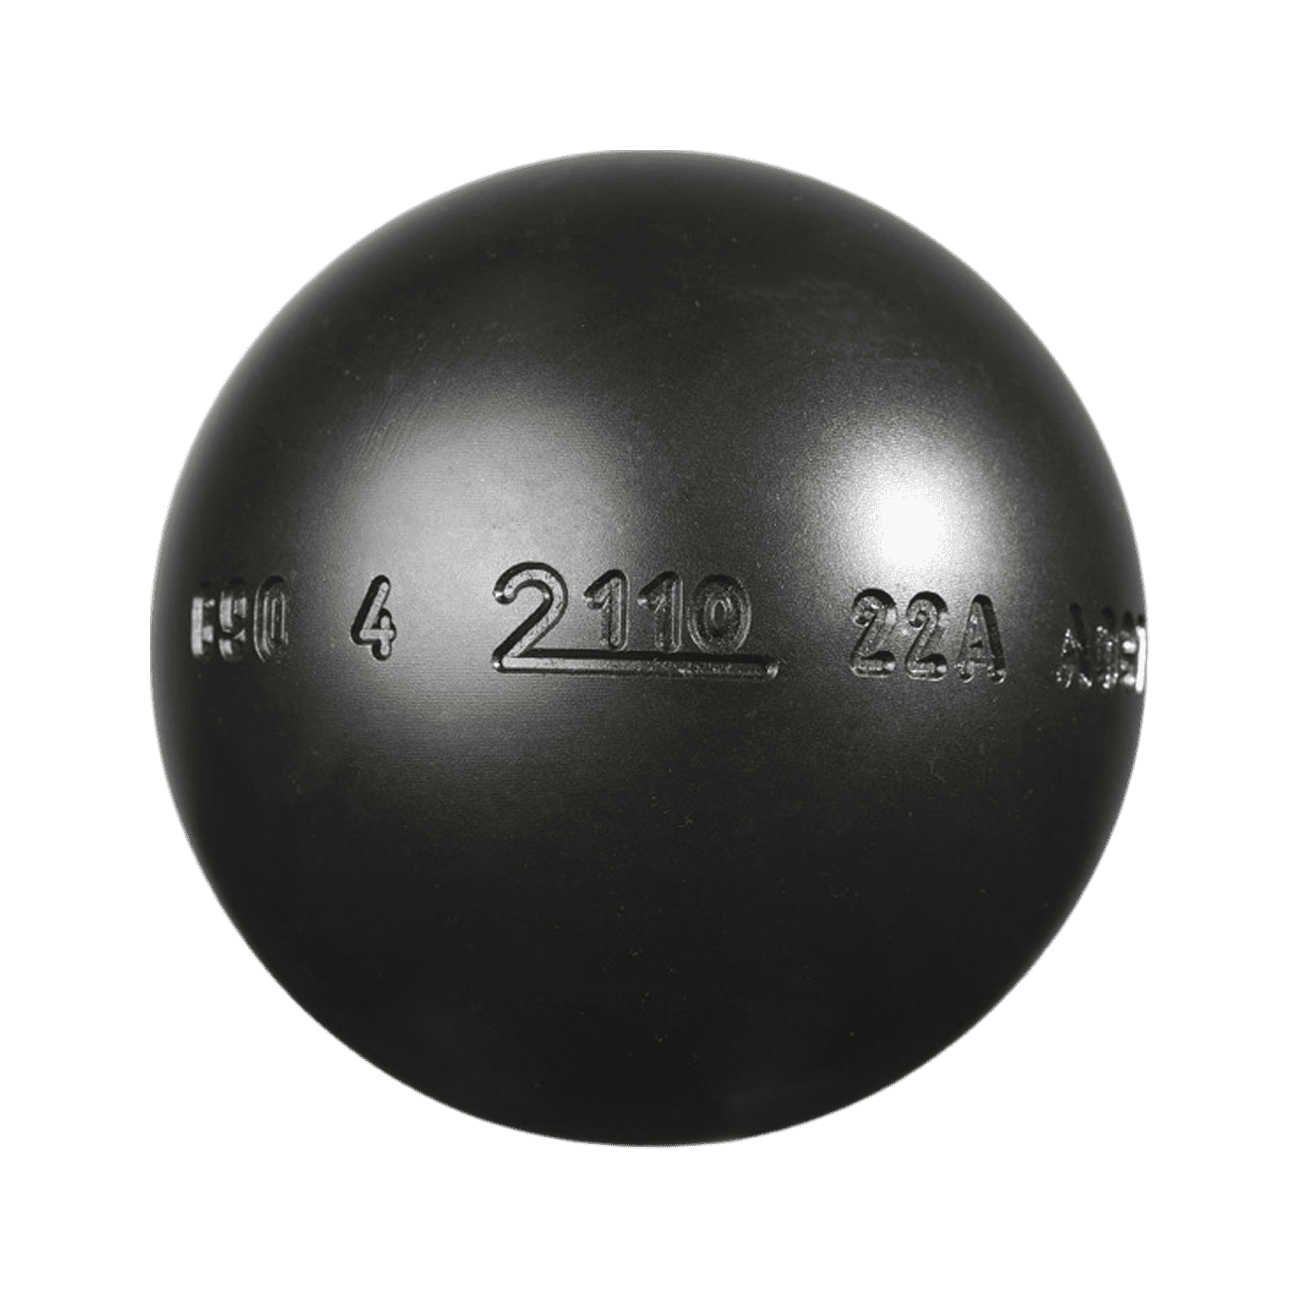 Boule tendre en acier inox, la boule de pétanque fabriquée à Marseille